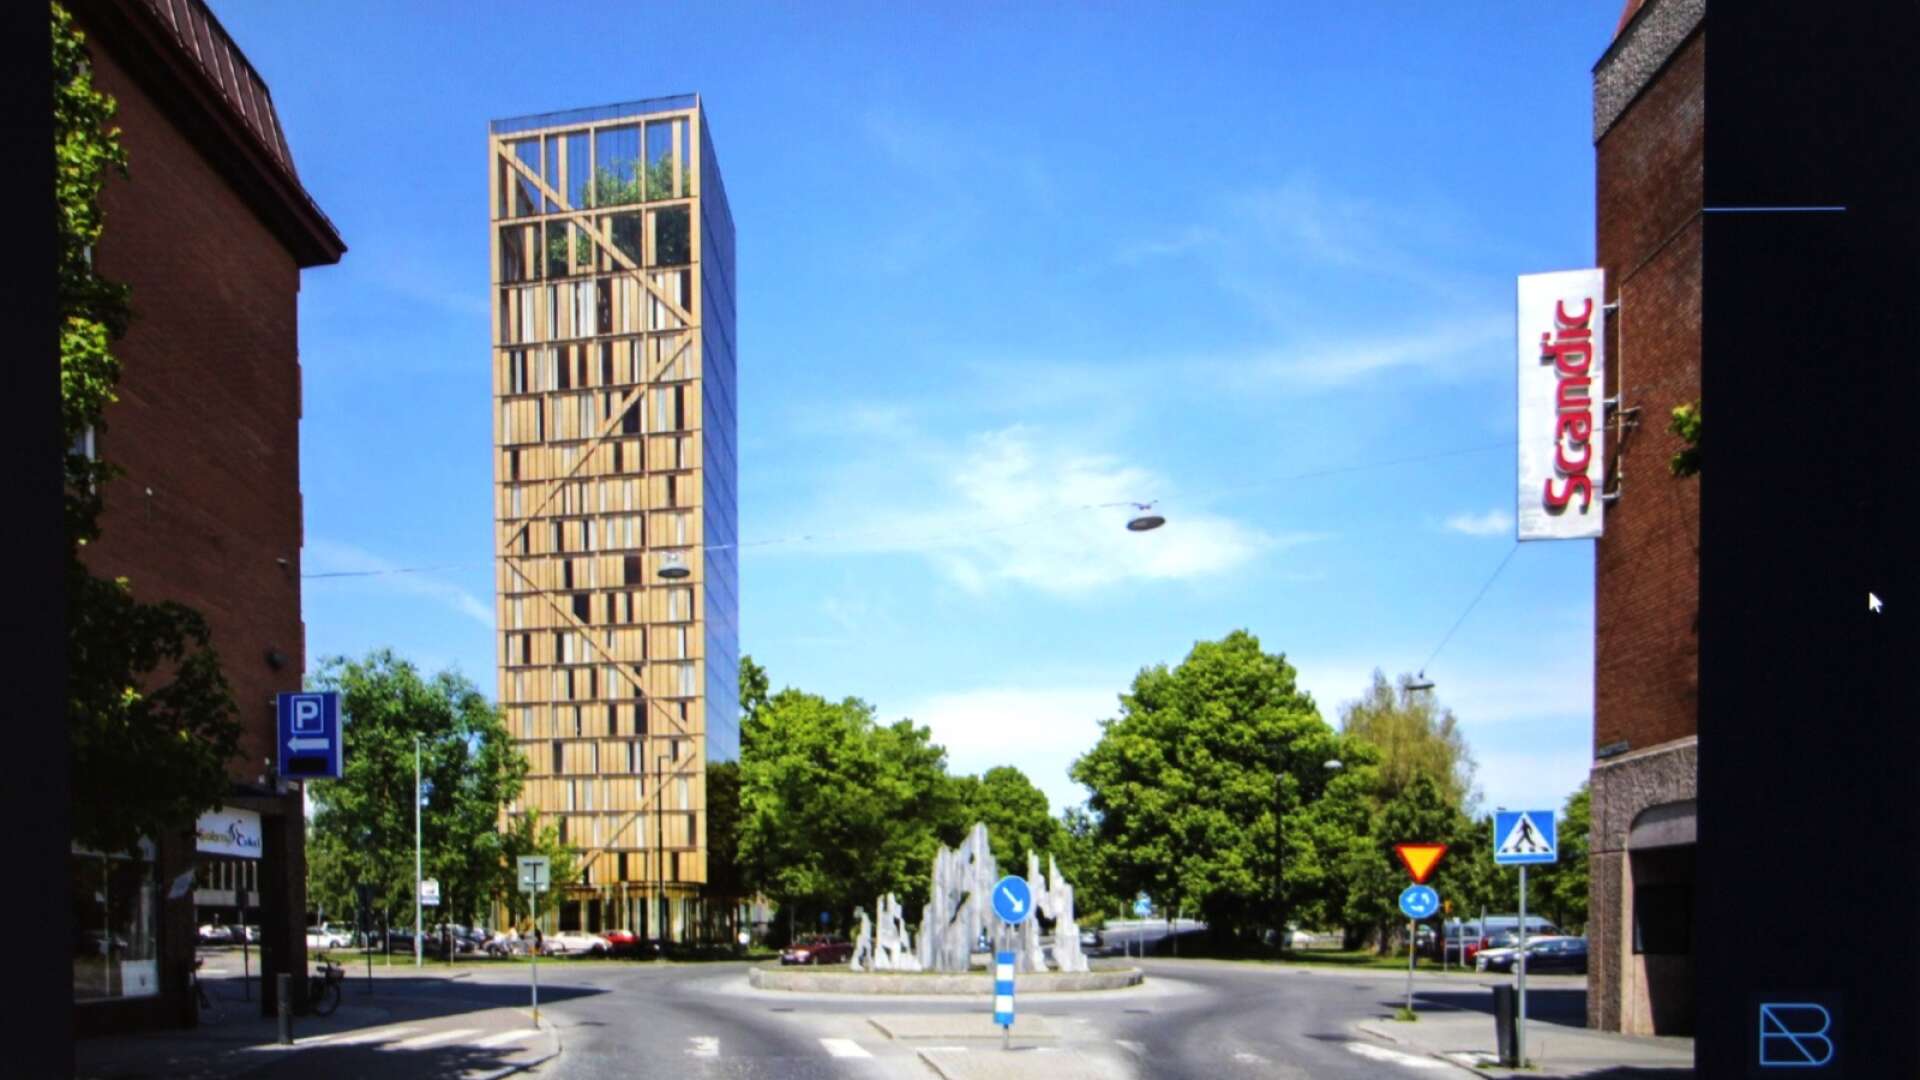 Den norska koncernen AB Invest vill bygga ett 100 meter högt hotell med 240 rum helt i trä i Karlstad. Tanken är att det ska placeras på en del av parkeringen mellan Bibliotekshuset och Sandgrund Lars Lerin och intill Klarälven.